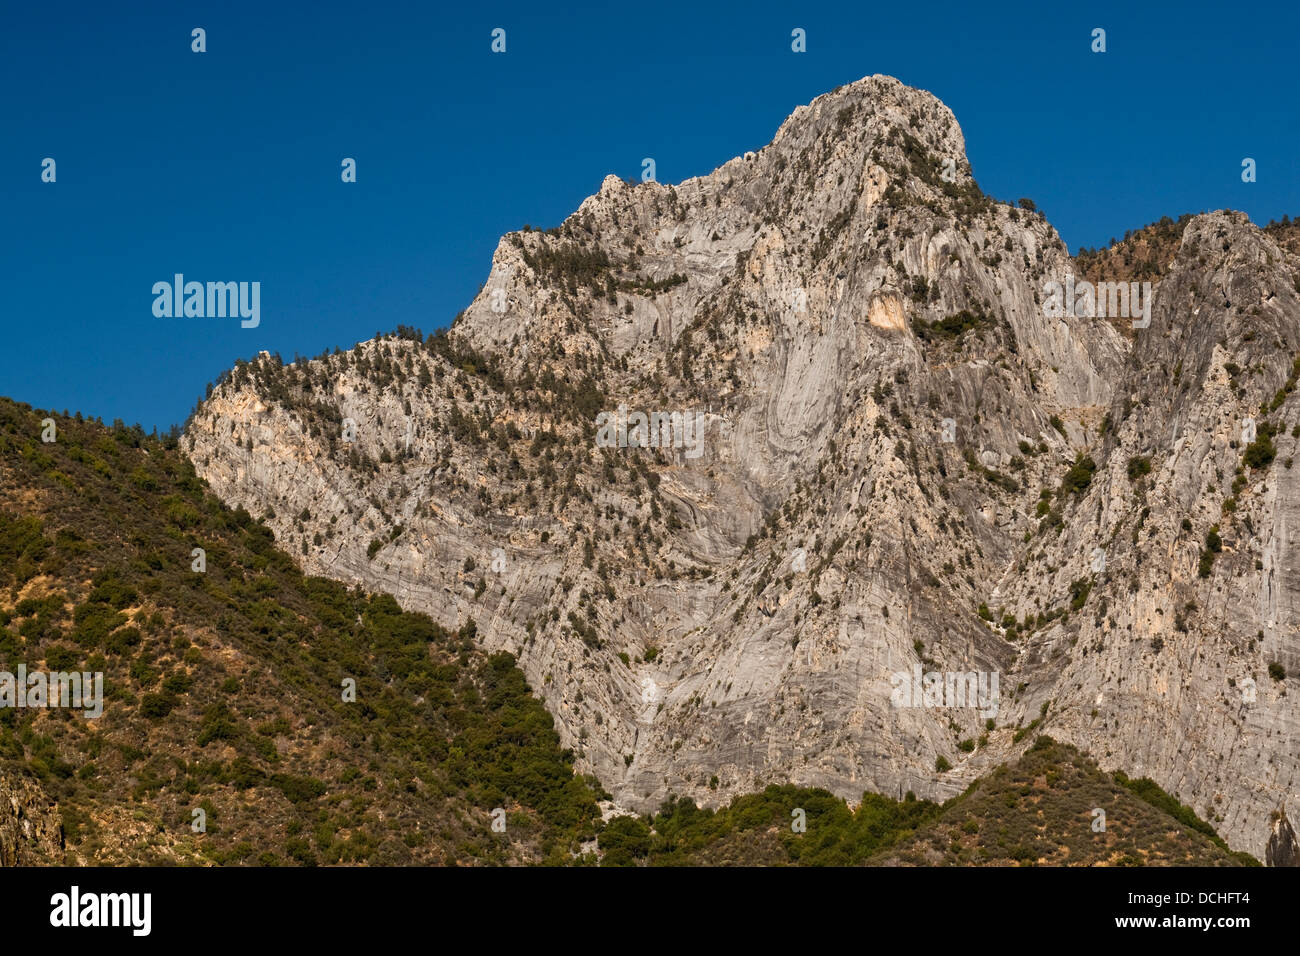 El pico de la montaña de granito encima de Kings Canyon, el condado de Fresno, California Foto de stock